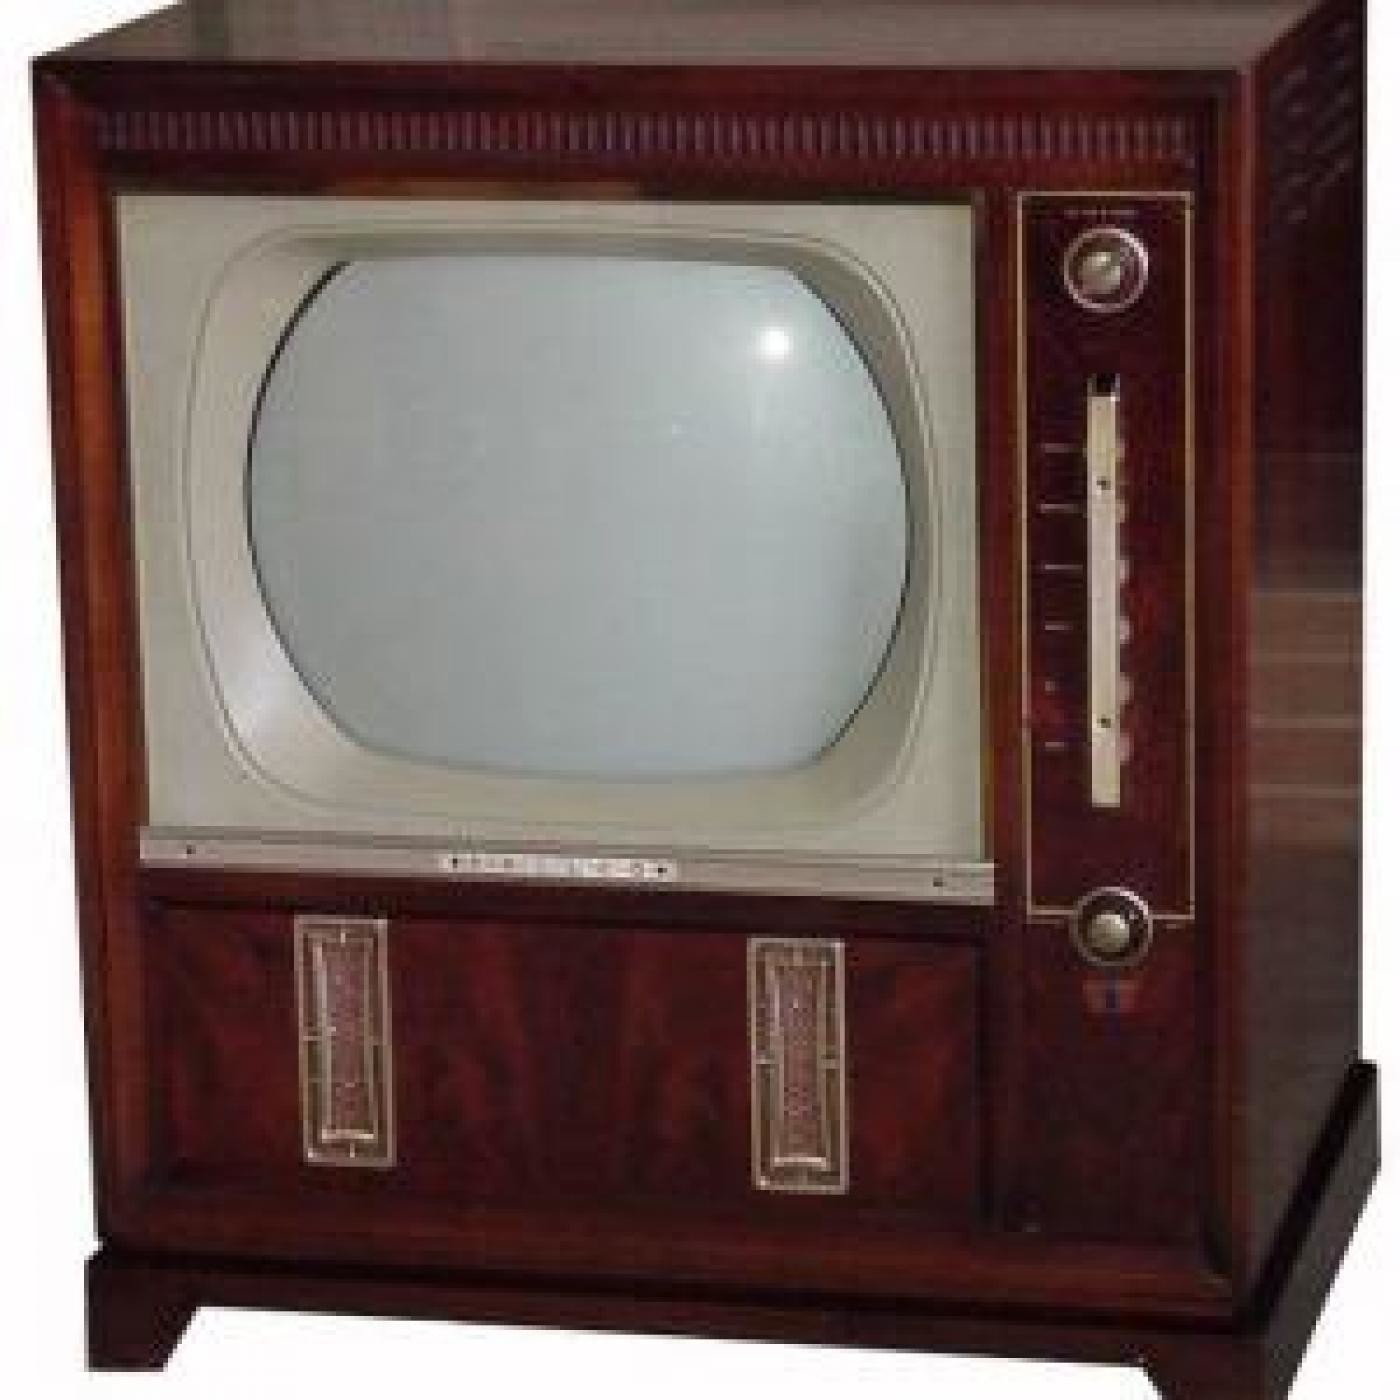 Телевизор 20 минут. Первый телевизор. Старый телевизор. Телевизор 20 века. Старинный телевизор.